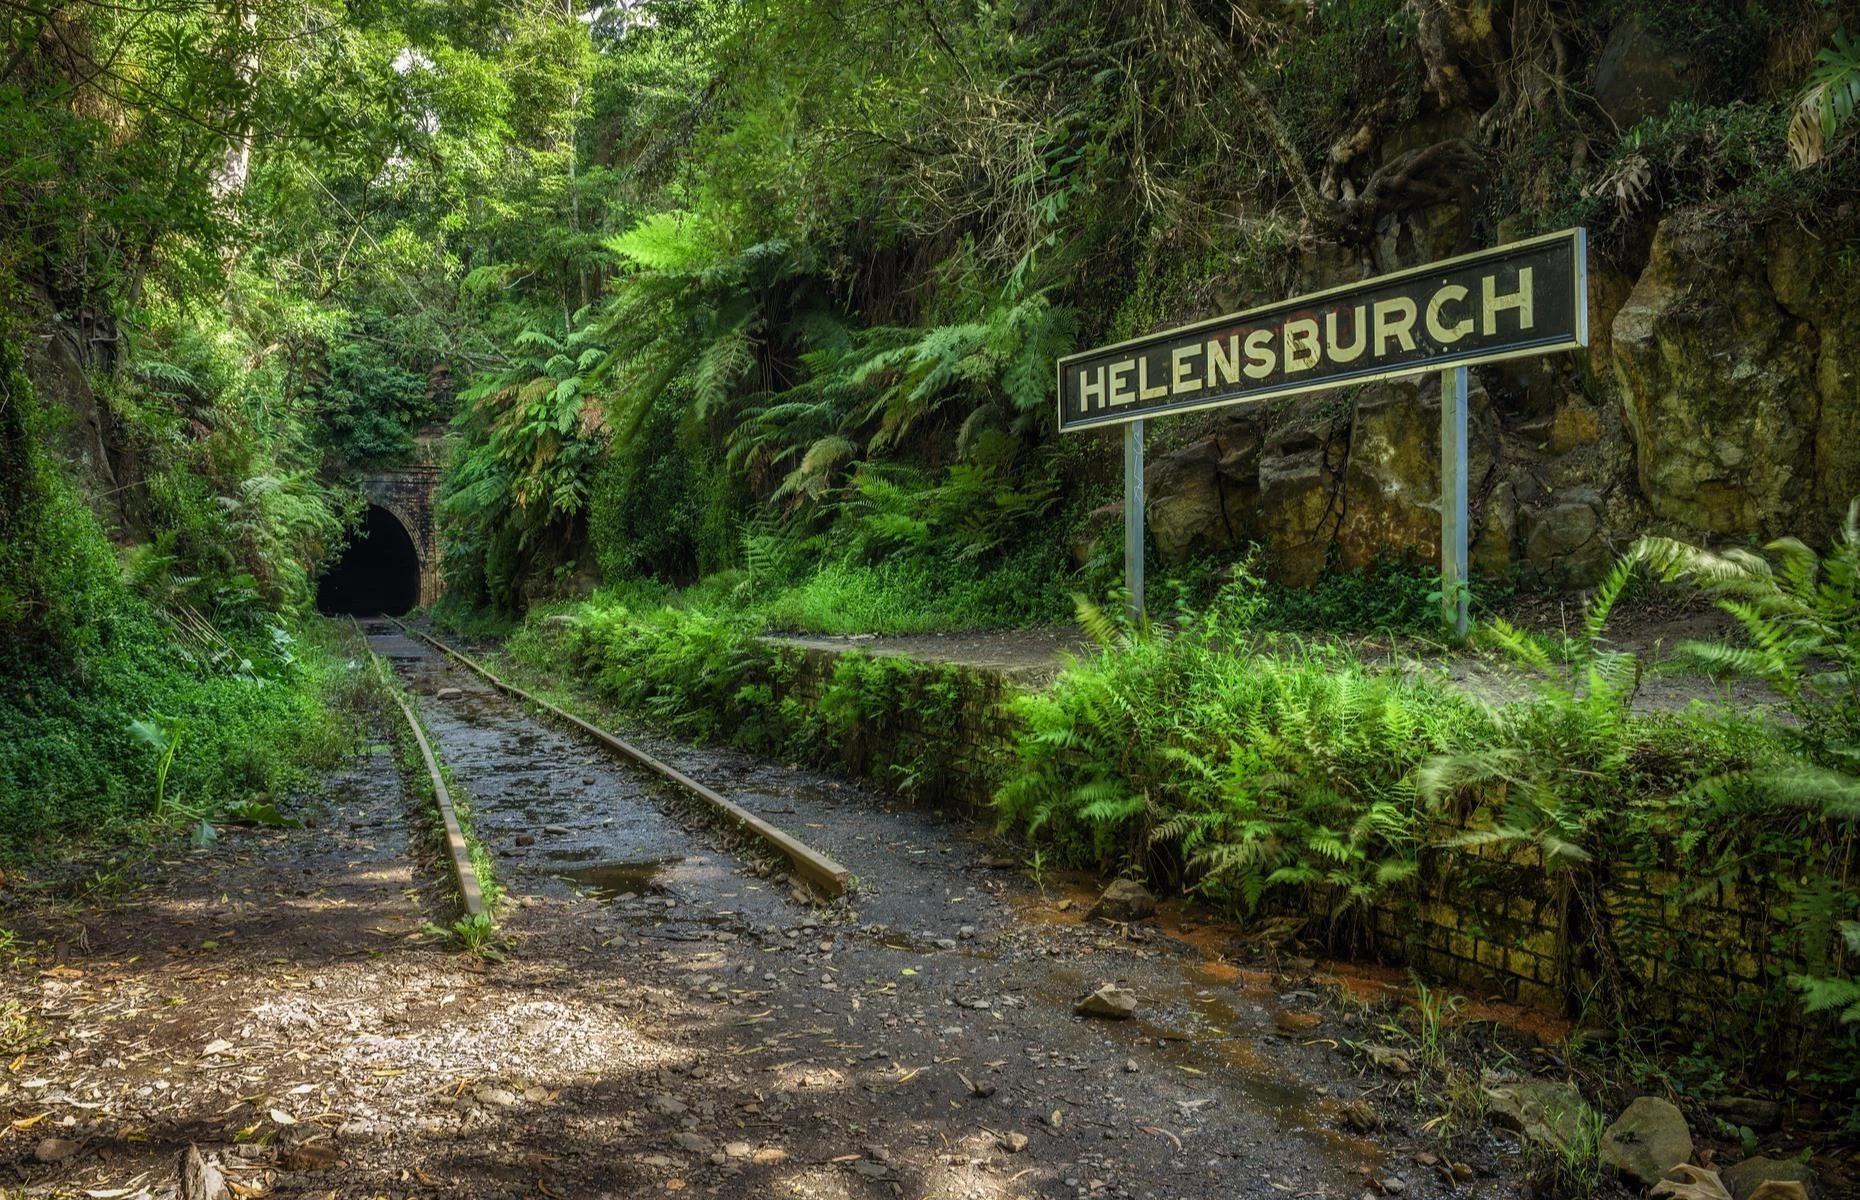 Ga xe lửa Helensburgh, Australia: Ga được xây dựng năm 1884-1886 ở thị trấn cùng tên thuộc bang New South Wales, Australia, để phục vụ các mỏ than và trang trại. Tuy nhiên, nhà ga đang đóng cửa do trận lũ lụt xảy ra vào tháng 5/2020. Khu vực này giờ đây phổ biến với người đi bộ, đam mê khám phá và các thợ săn ma.